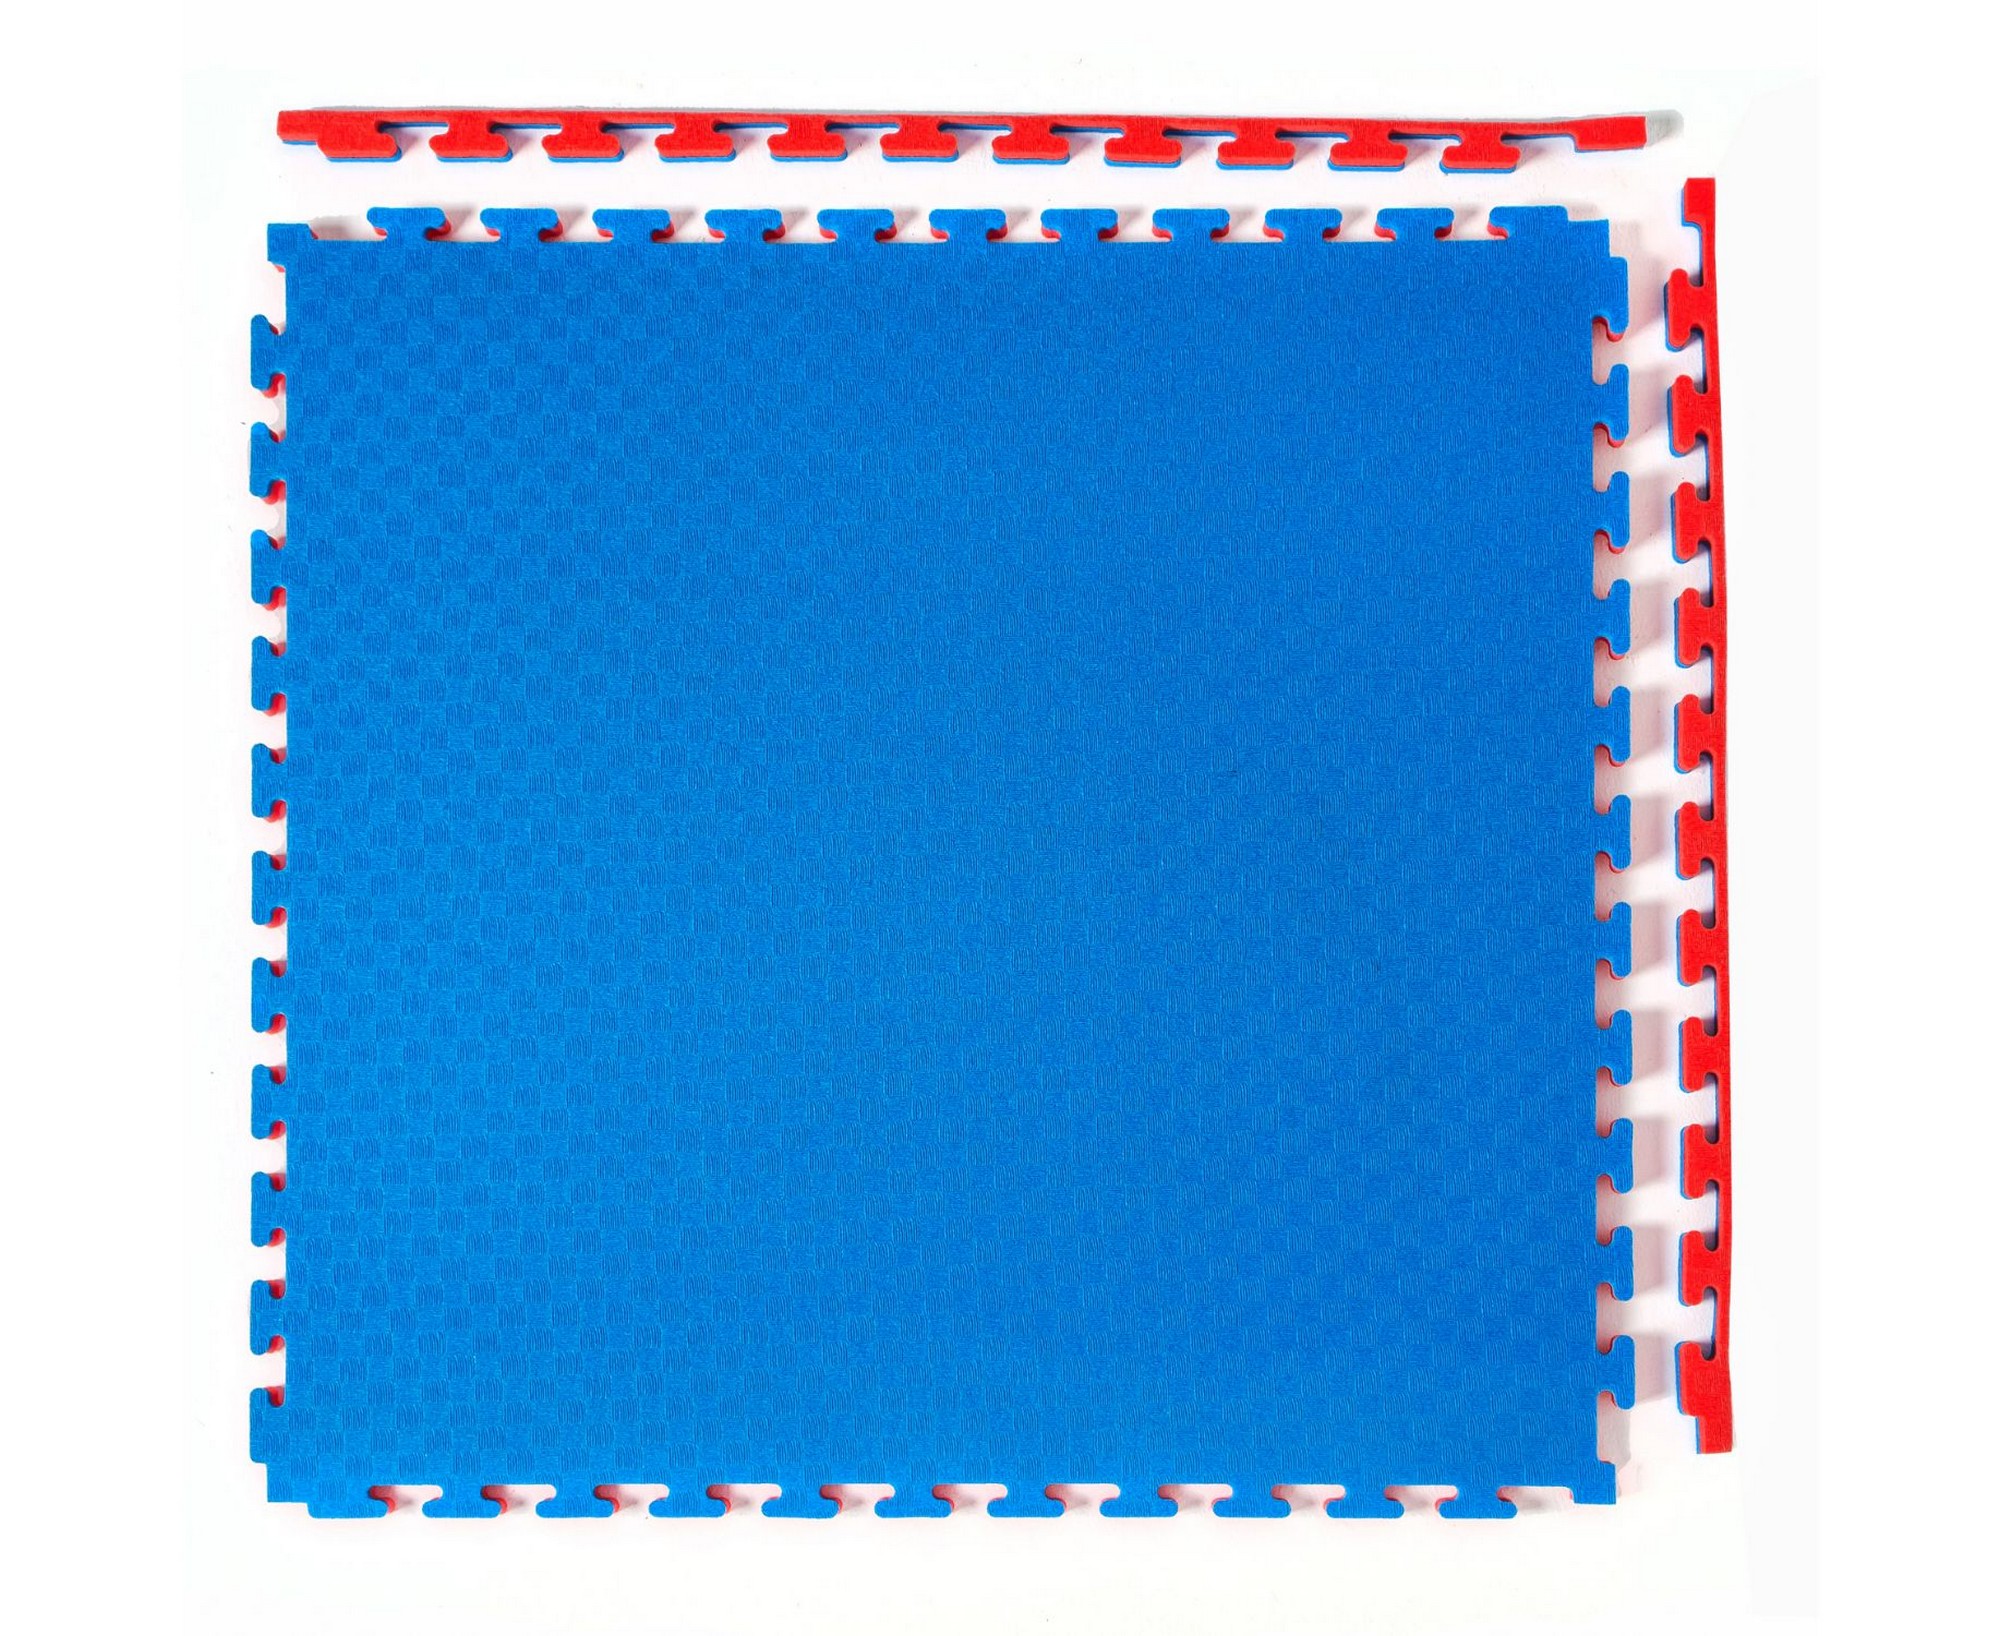 фото Будо-мат, 100x100 см, 20 мм dfc 12272 сине-красный